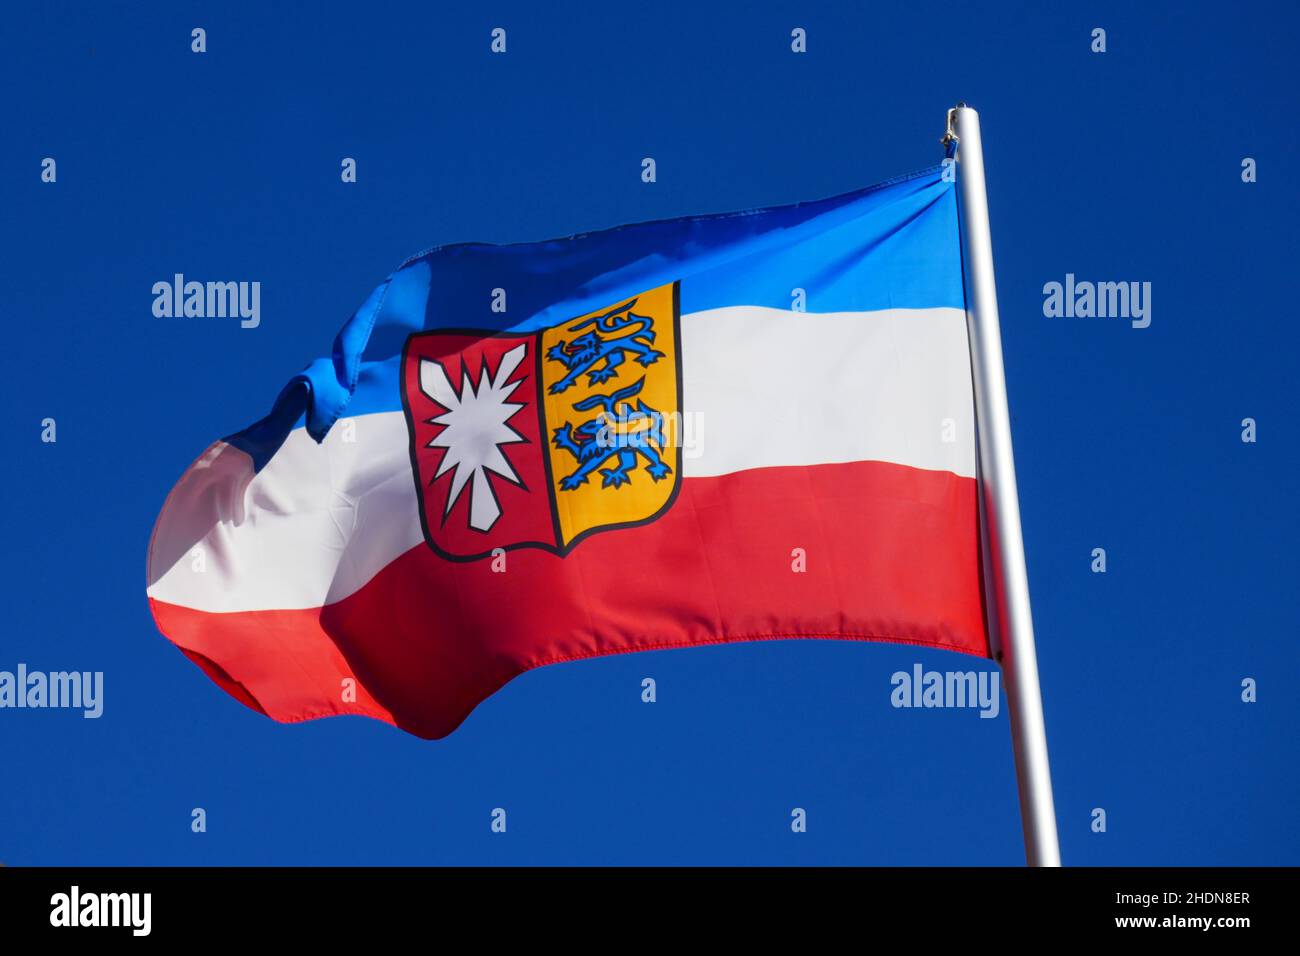 drapeau de pays, schleswig holstein, drapeaux de pays Banque D'Images